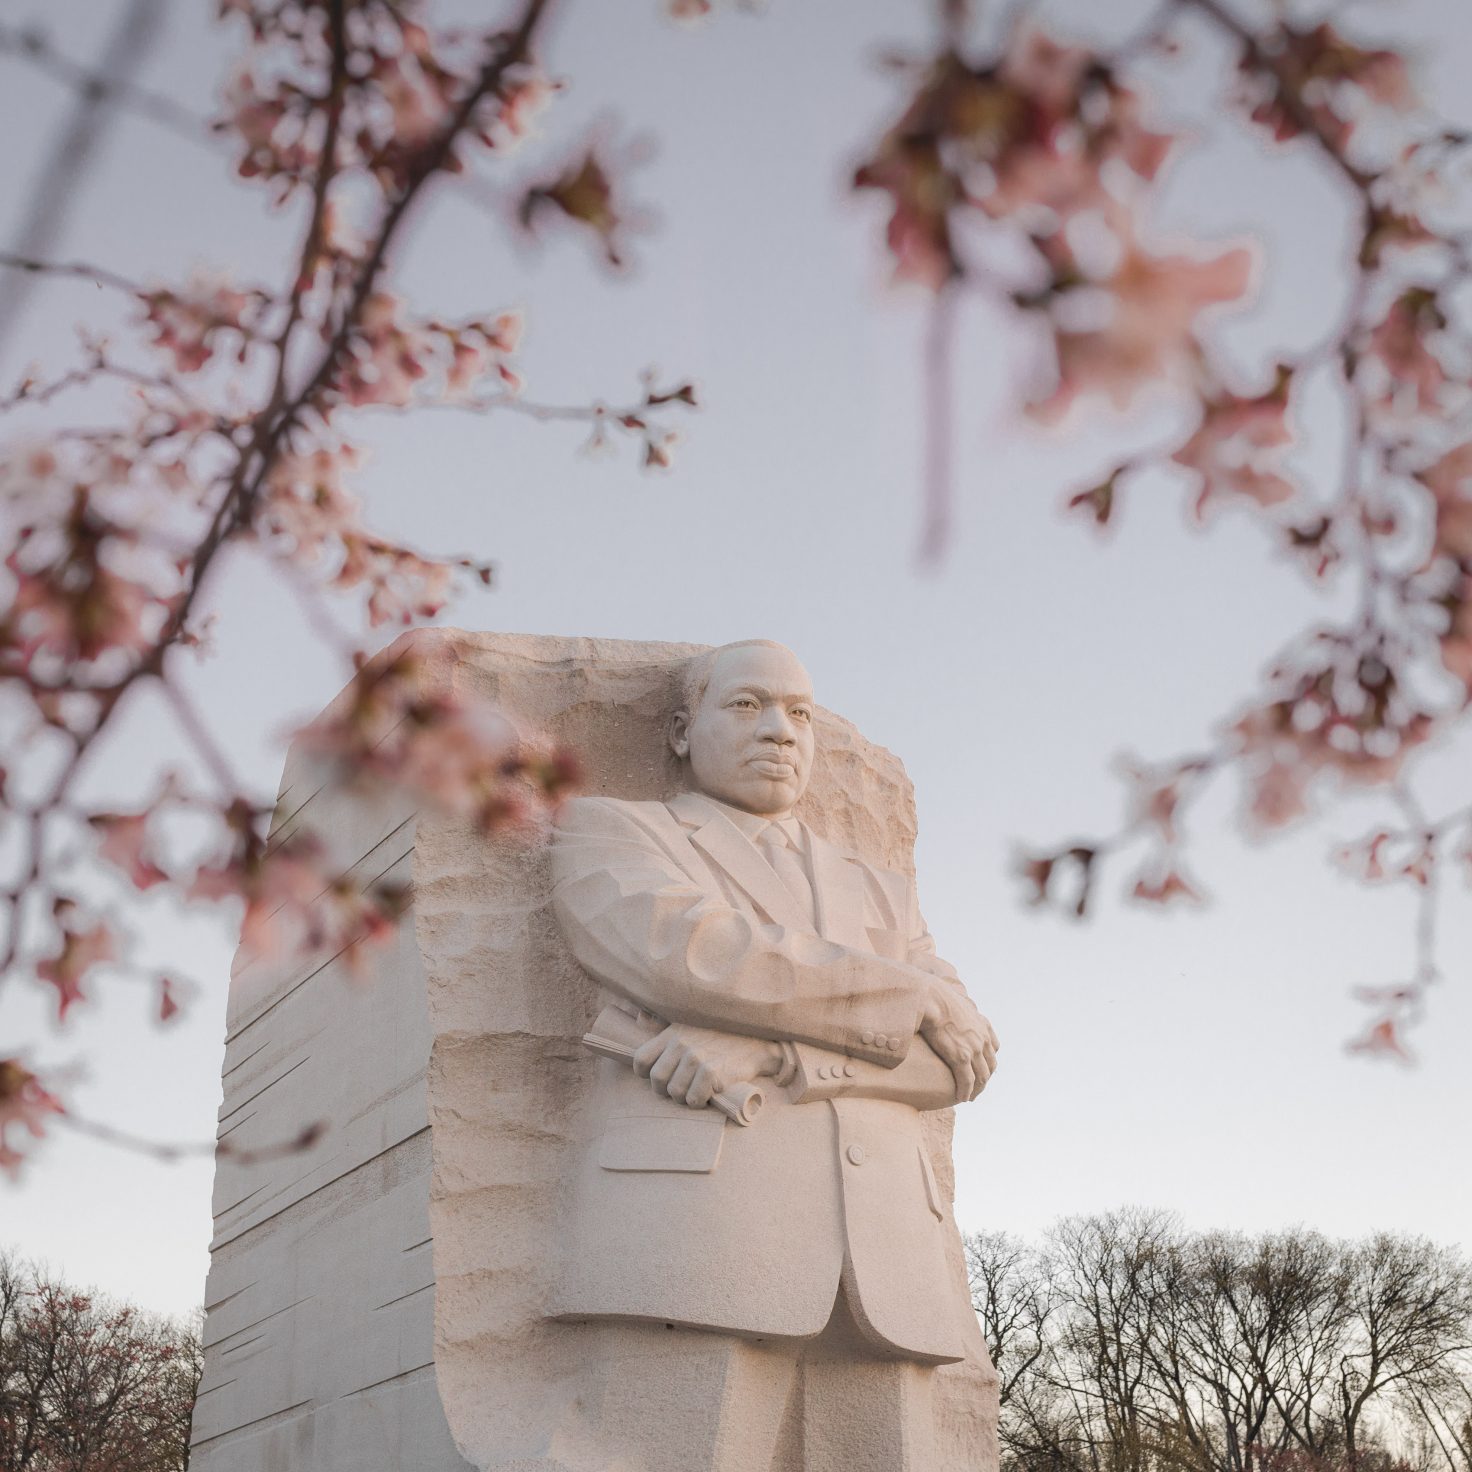 Martin Luther King, Jr. Memorial in Washington DC (MLK Memorial Photos)